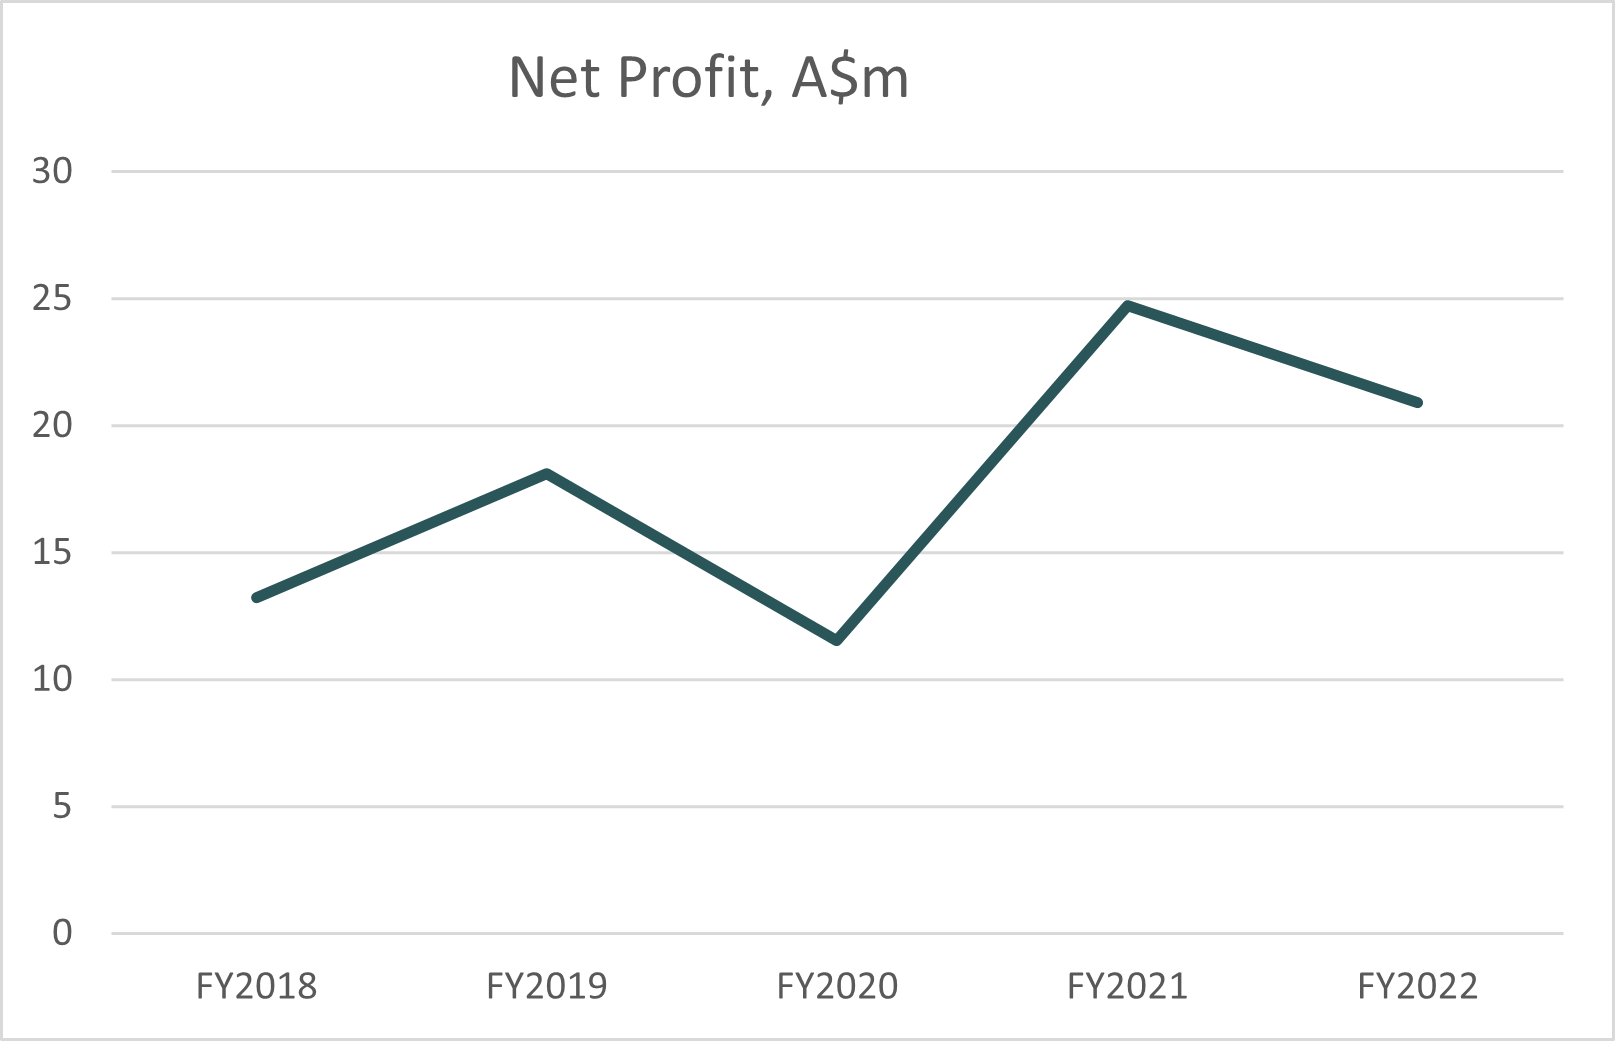 Graph 2022: Net Profit